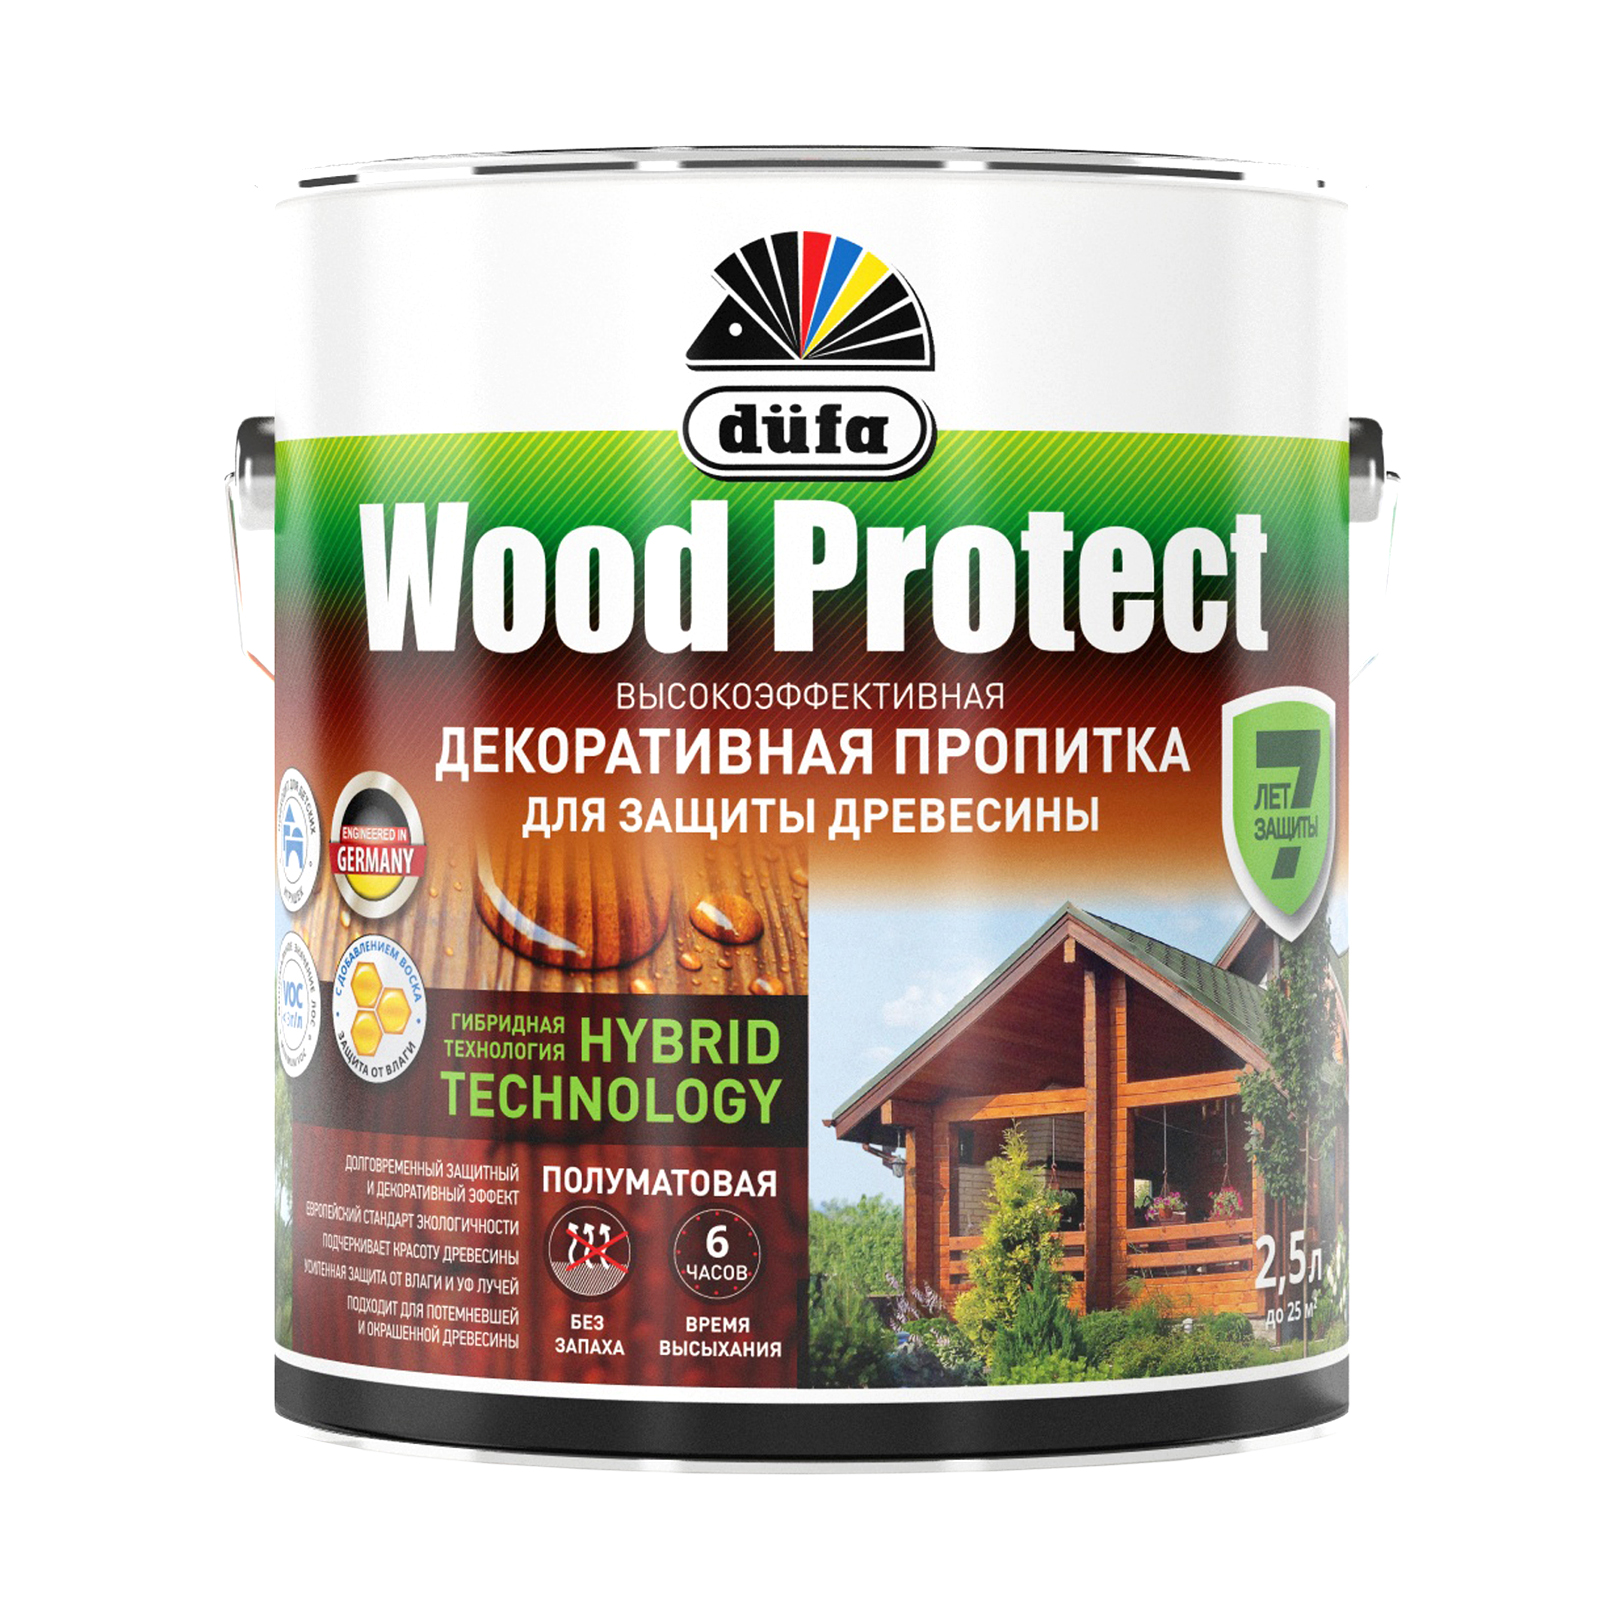 Пропитка для древесины Dufa Wood Protect тик, 2,5 л